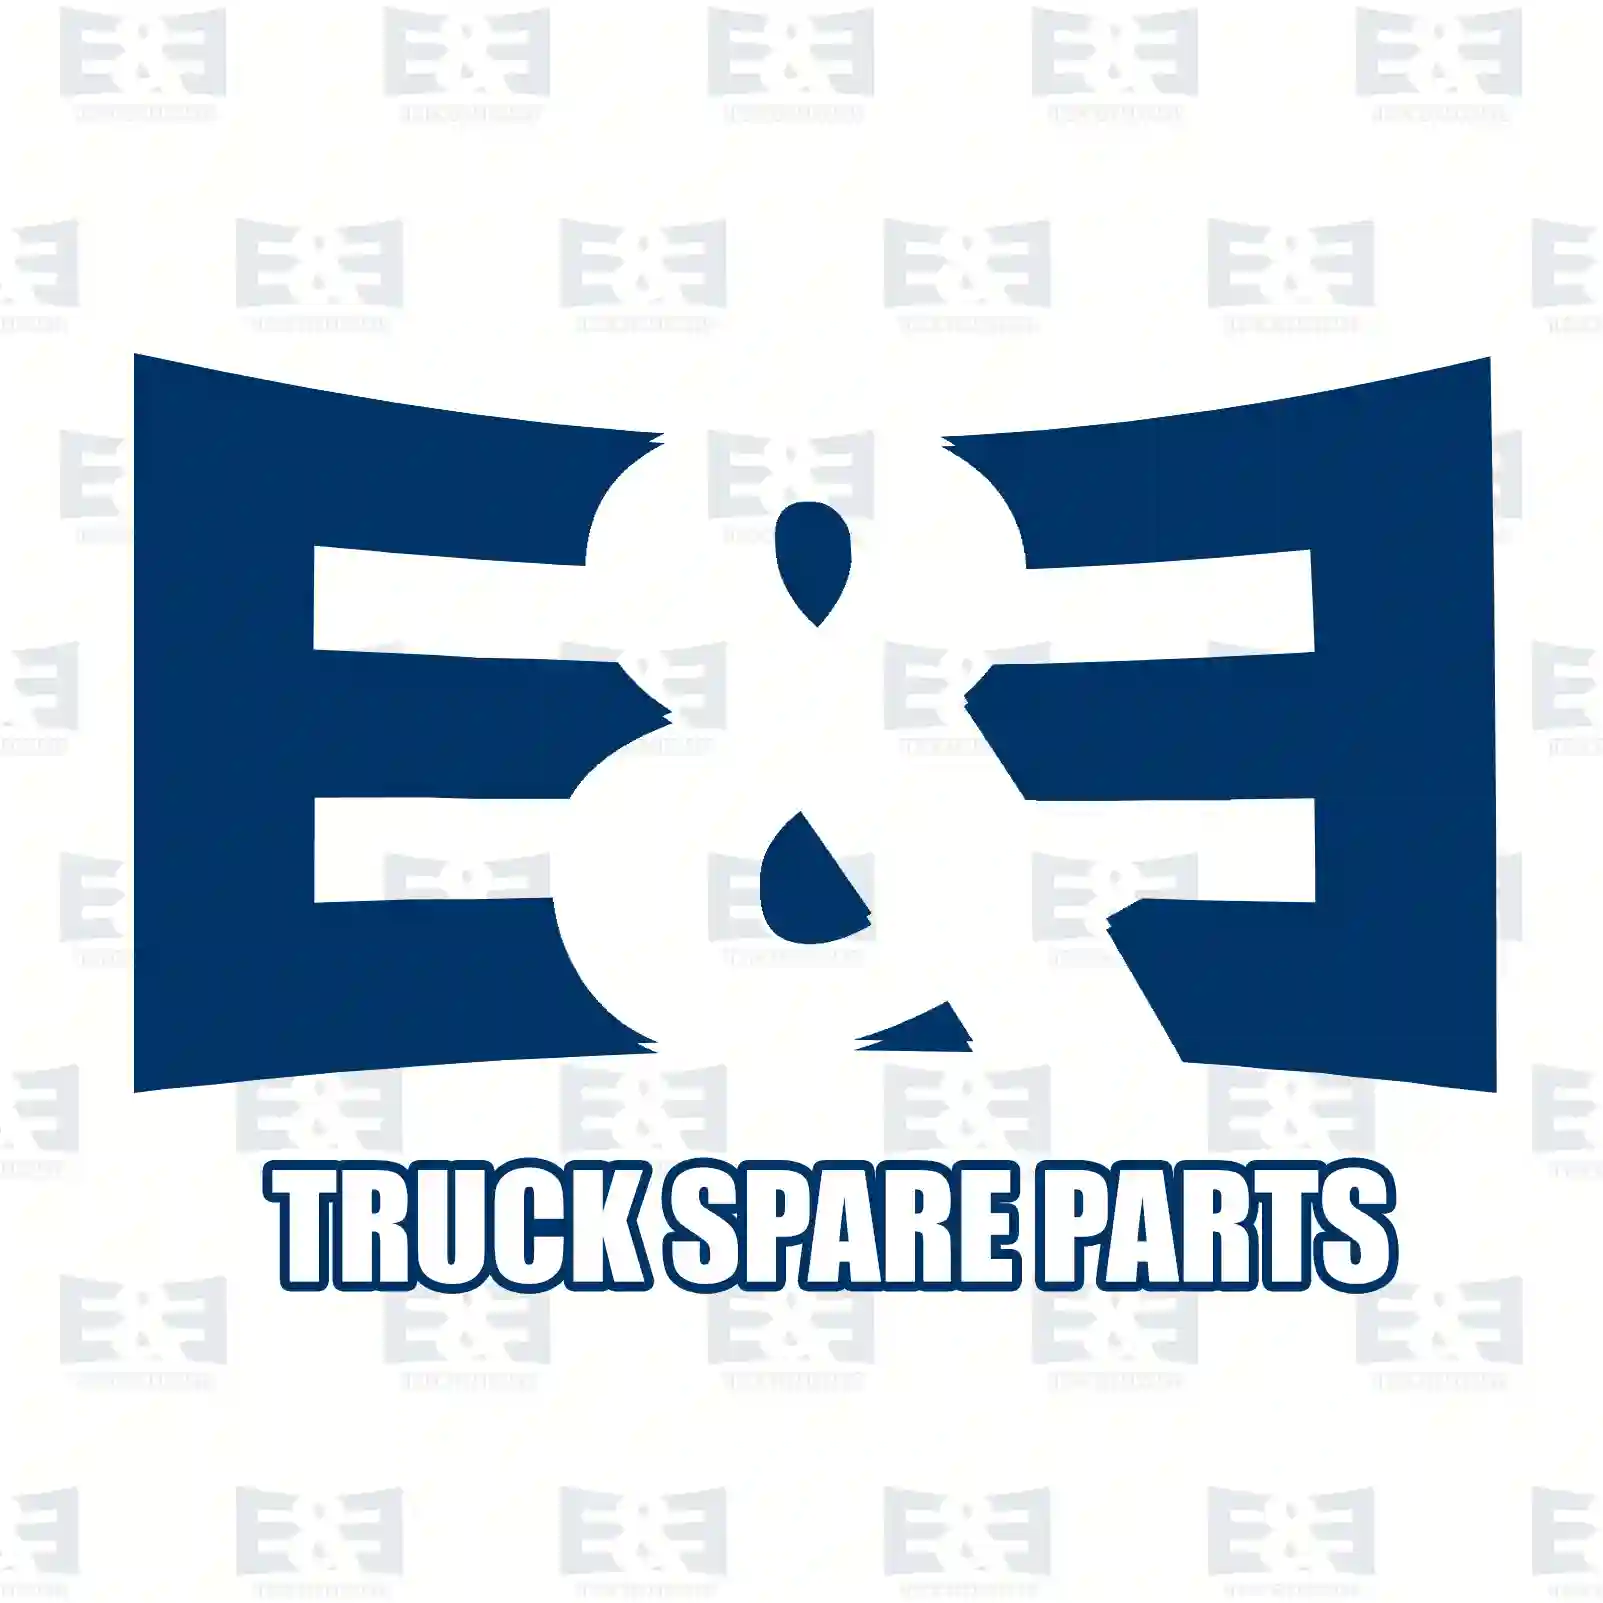 Clutch kit, 2E2288974, 81300059039 ||  2E2288974 E&E Truck Spare Parts | Truck Spare Parts, Auotomotive Spare Parts Clutch kit, 2E2288974, 81300059039 ||  2E2288974 E&E Truck Spare Parts | Truck Spare Parts, Auotomotive Spare Parts